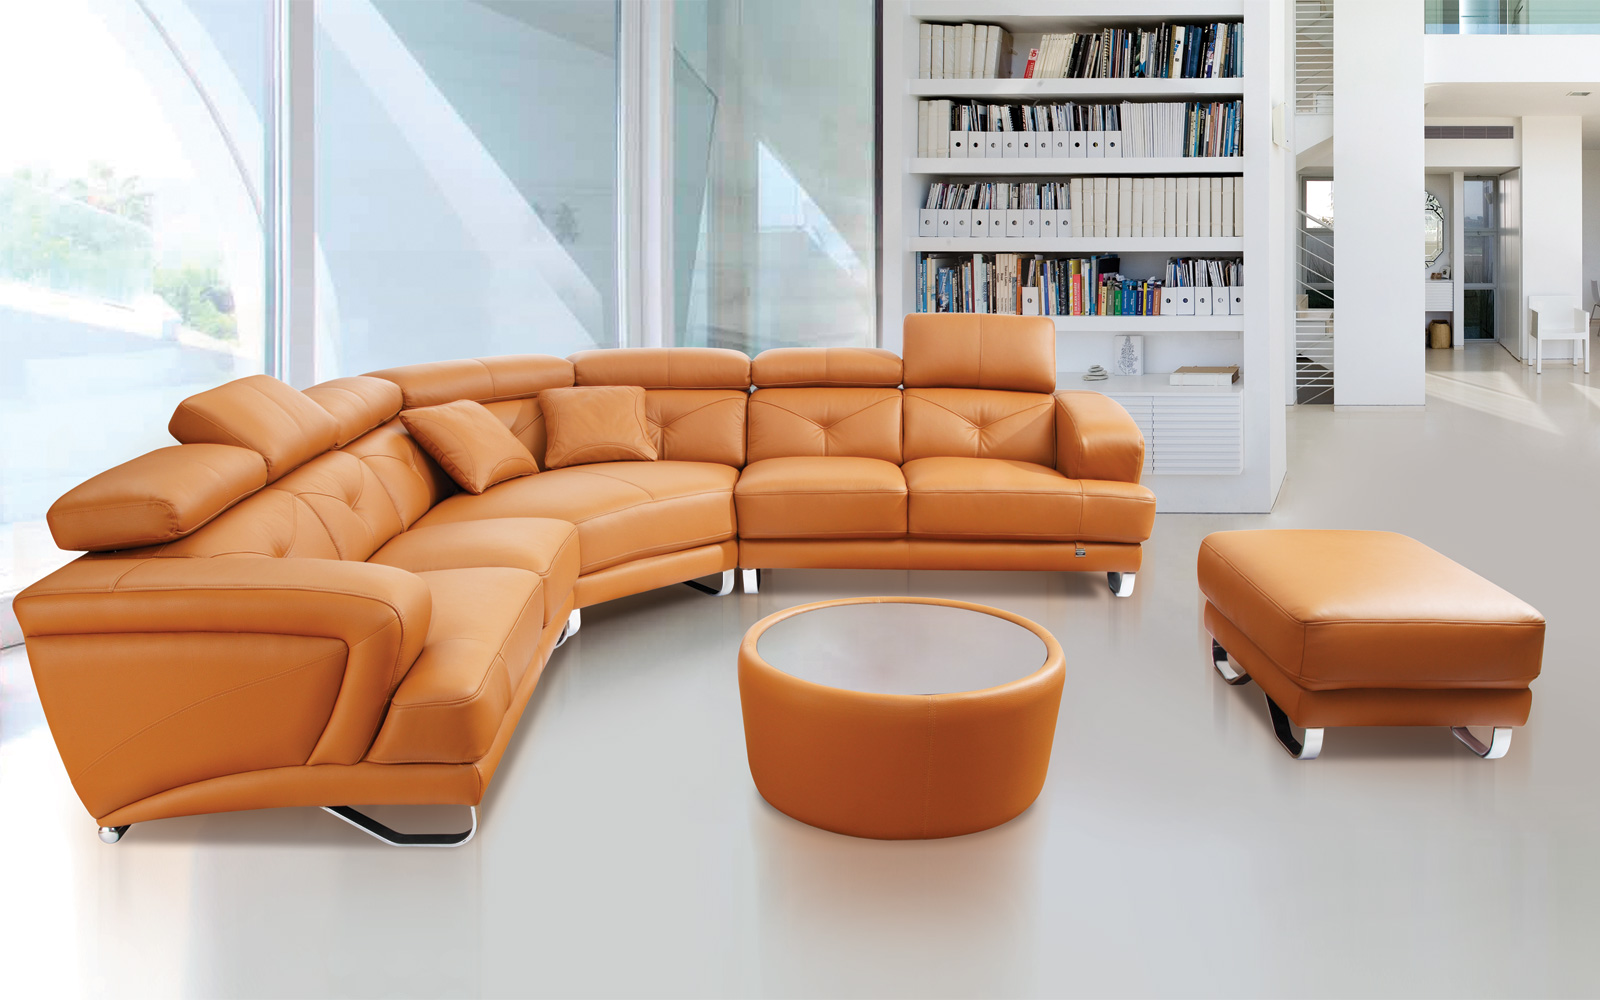 Sofa da thật là sự lựa chọn hoàn hảo cho phòng khách lớn